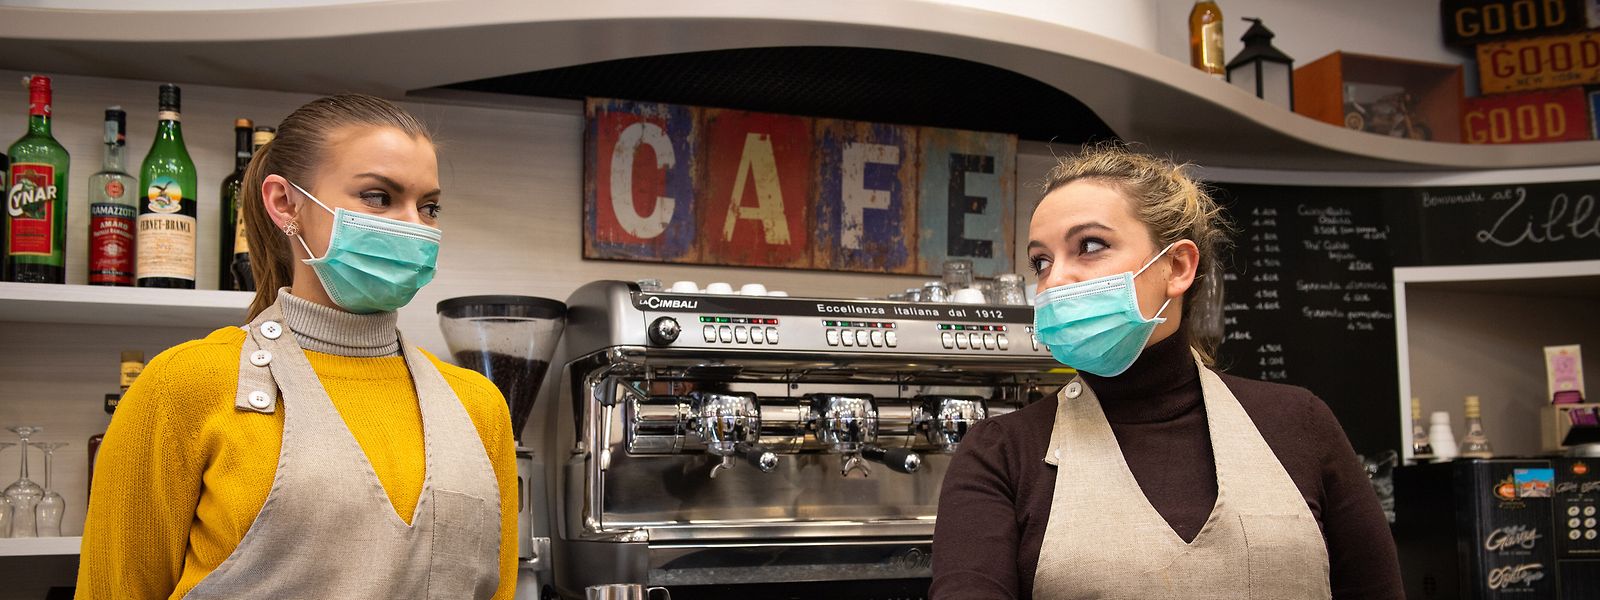 Italien, Bologna: Die Mitarbeiterinnen eines Cafés servieren mit Mundschutz Kaffee. Das wird demnächst nicht mehr möglich sein.